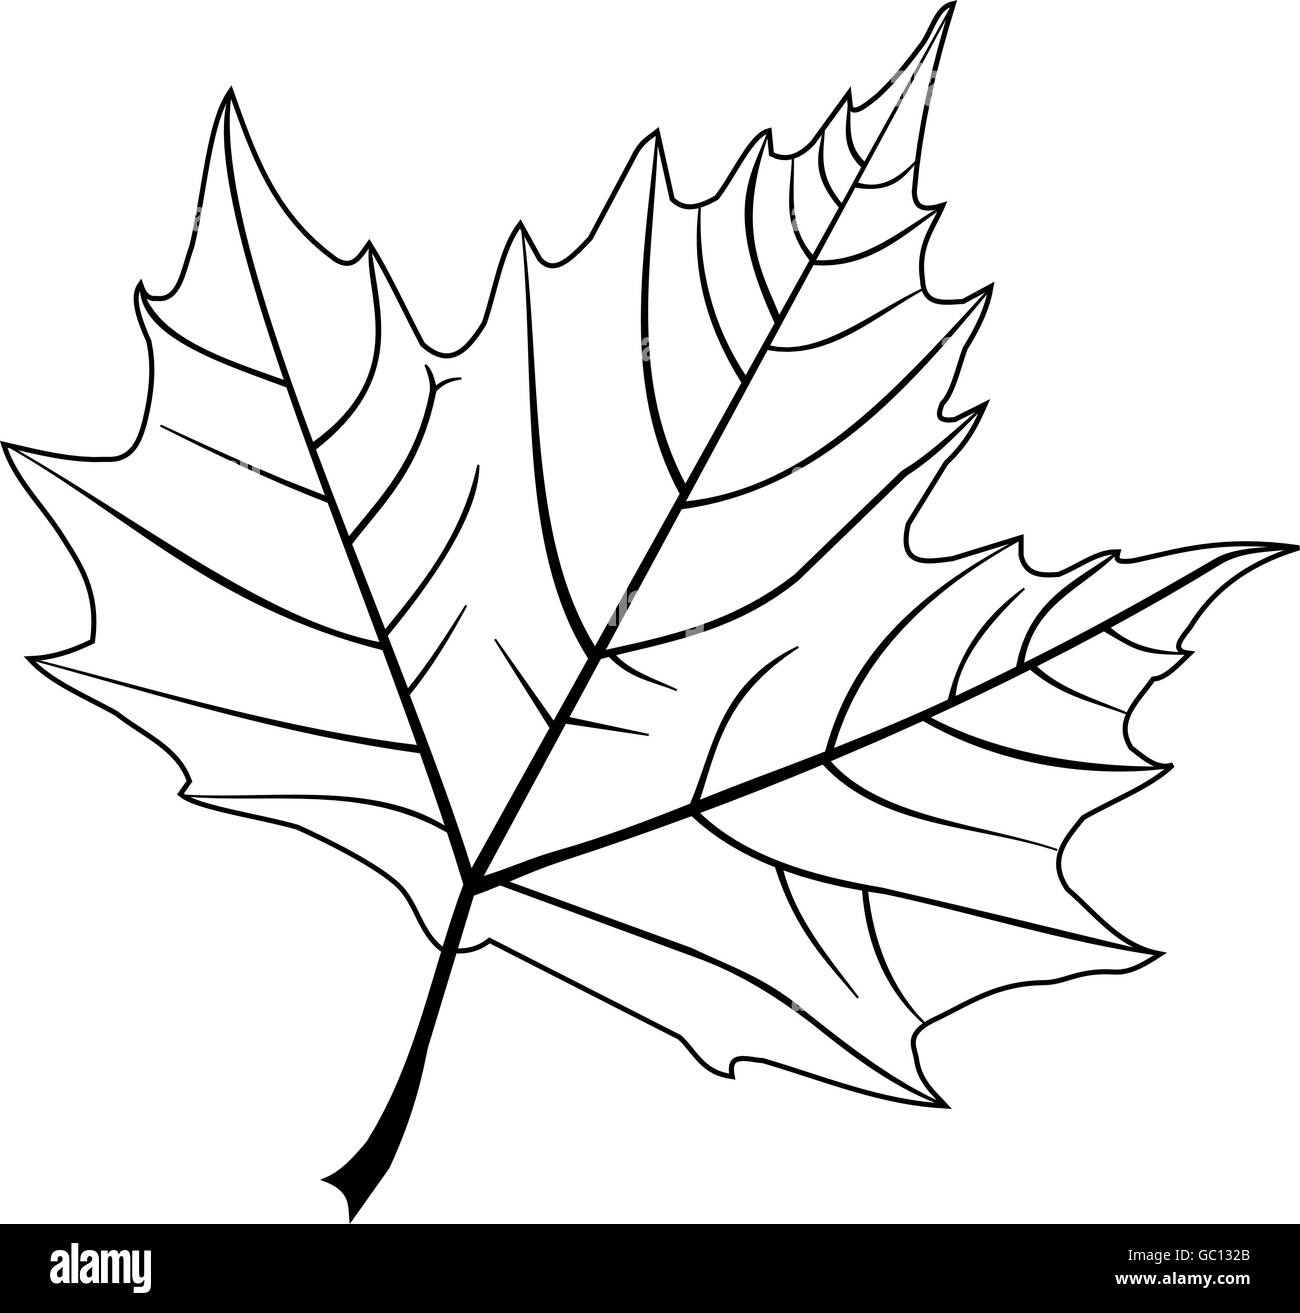 Ahorn,(Platanus acerifolia), Vektor, isolierte Ahorn Blatt, Stock Vektor